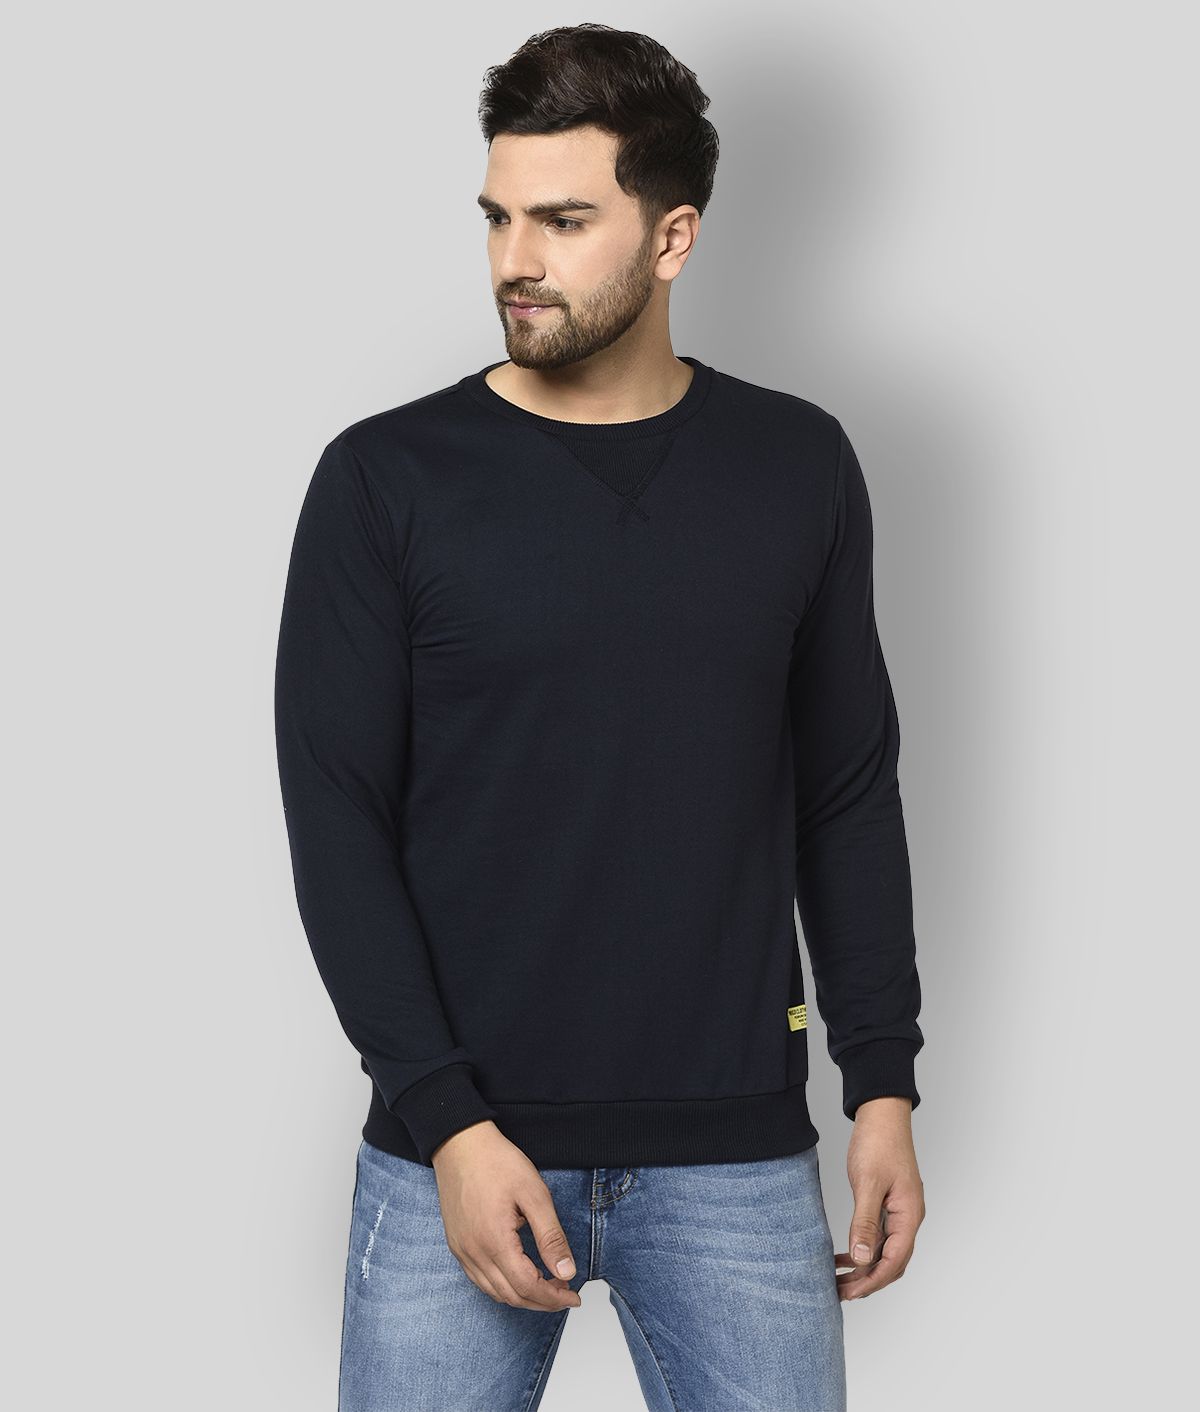     			Rigo - Navy Fleece Regular Fit Men's Sweatshirt ( Pack of 1 )